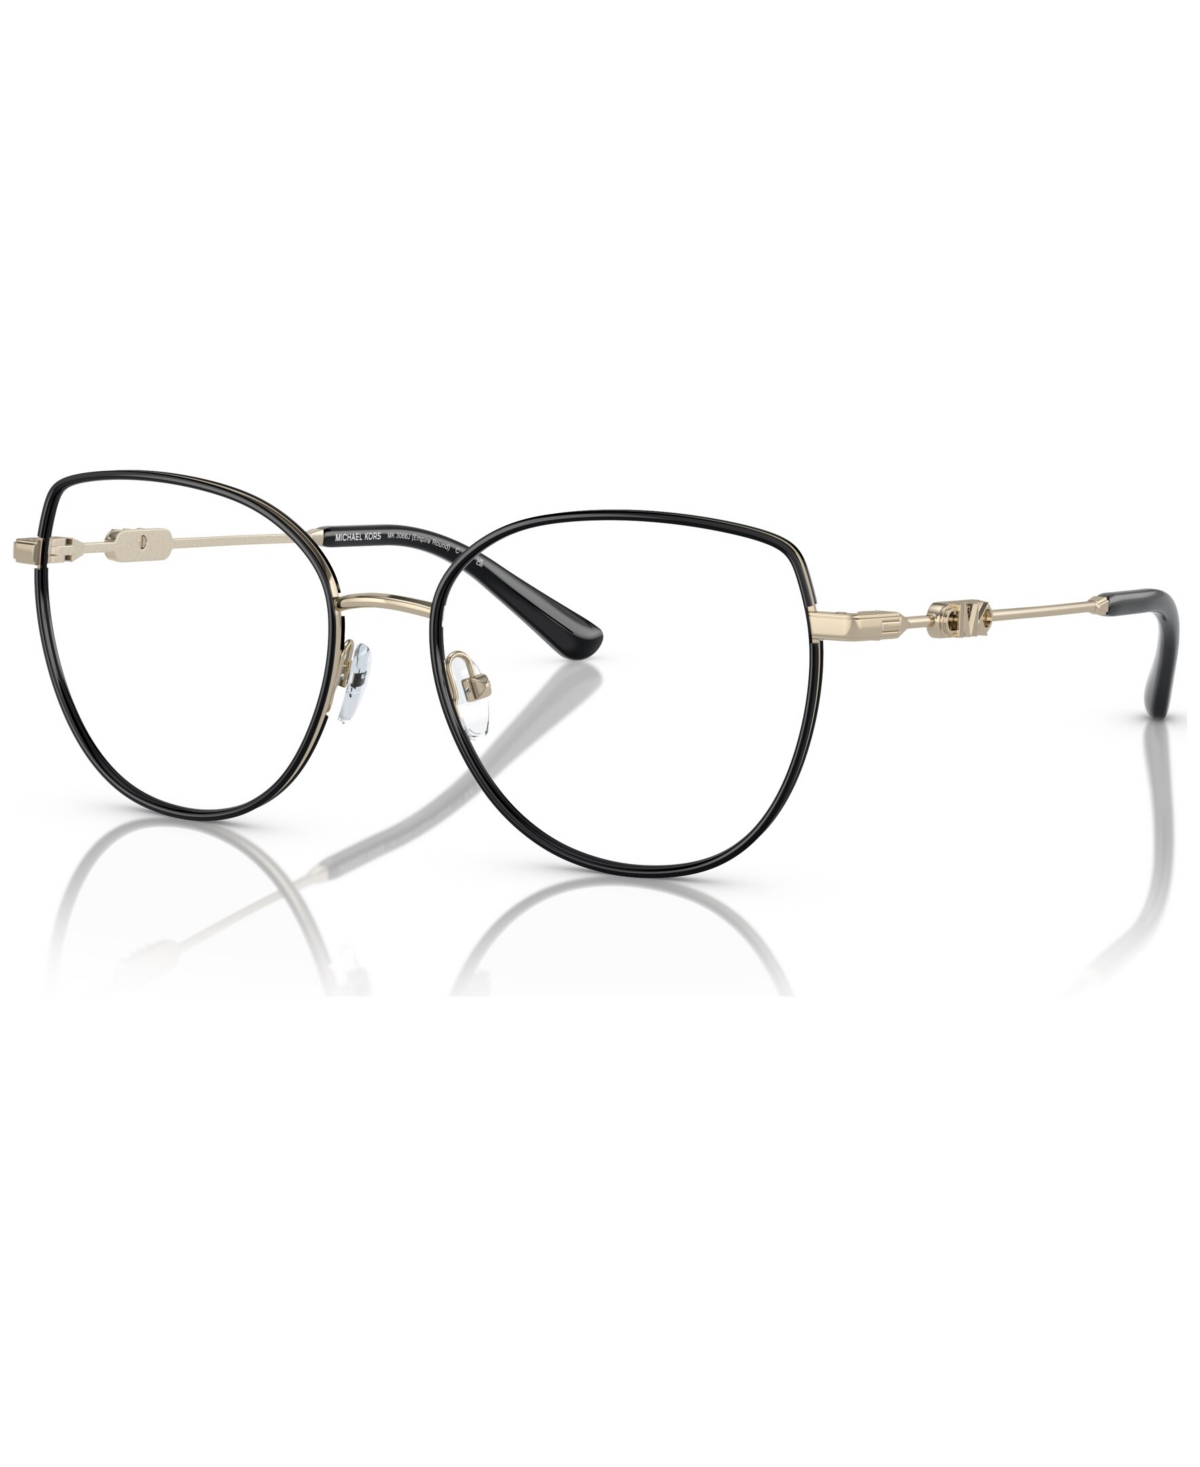 Women's Irregular Eyeglasses, MK3066J 53 - Light Gold-Tone, Black